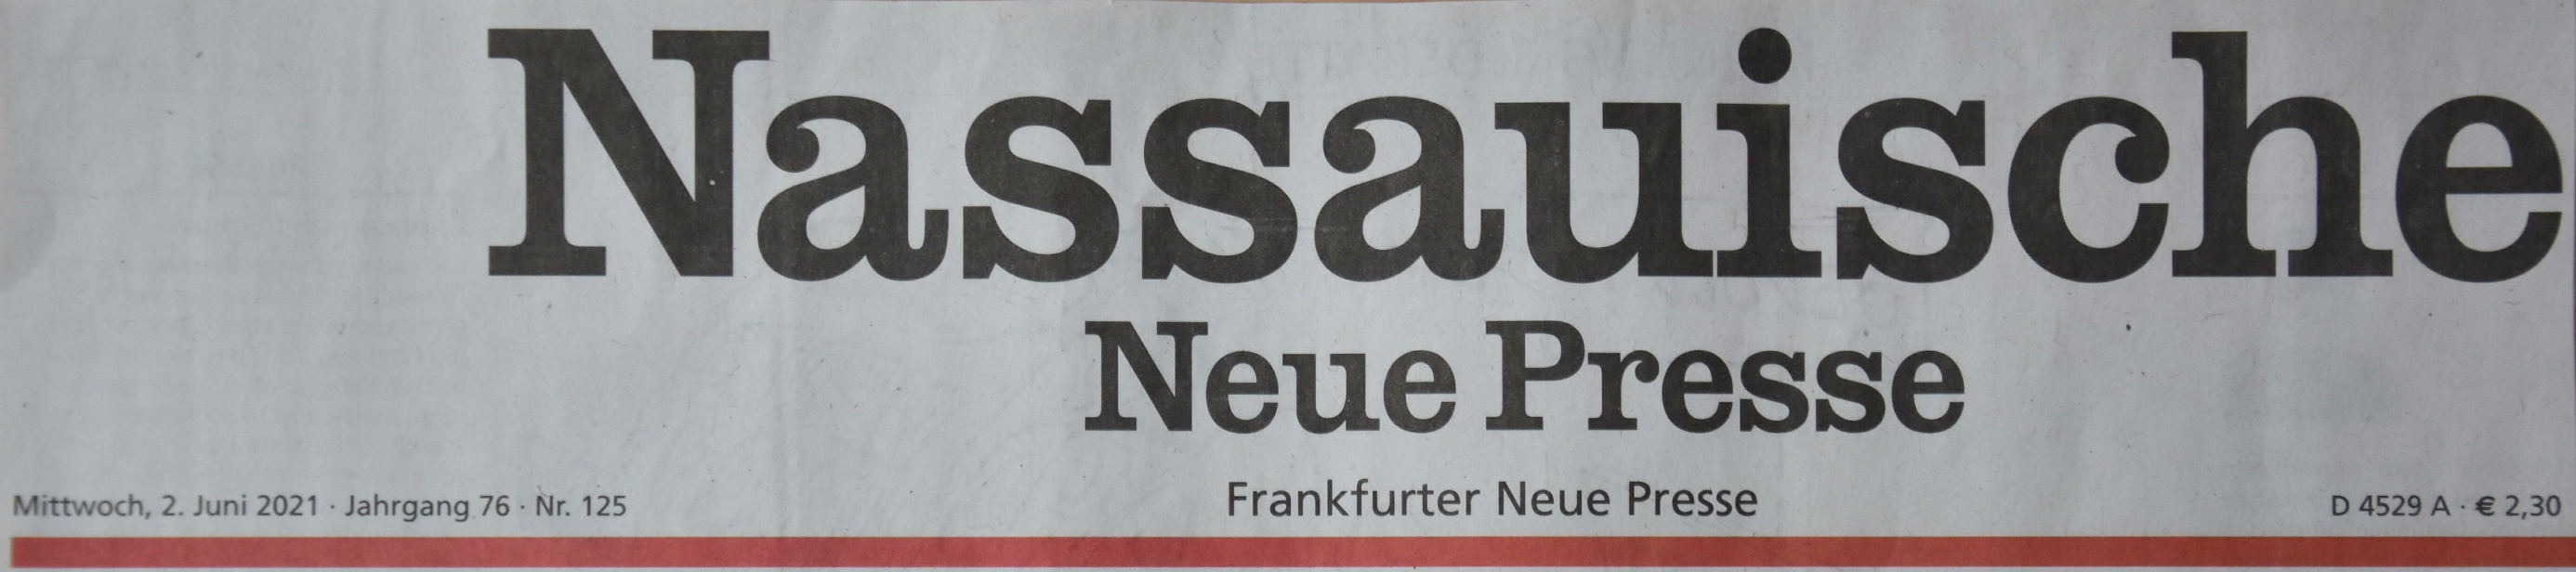 Nassauische Neue Presse